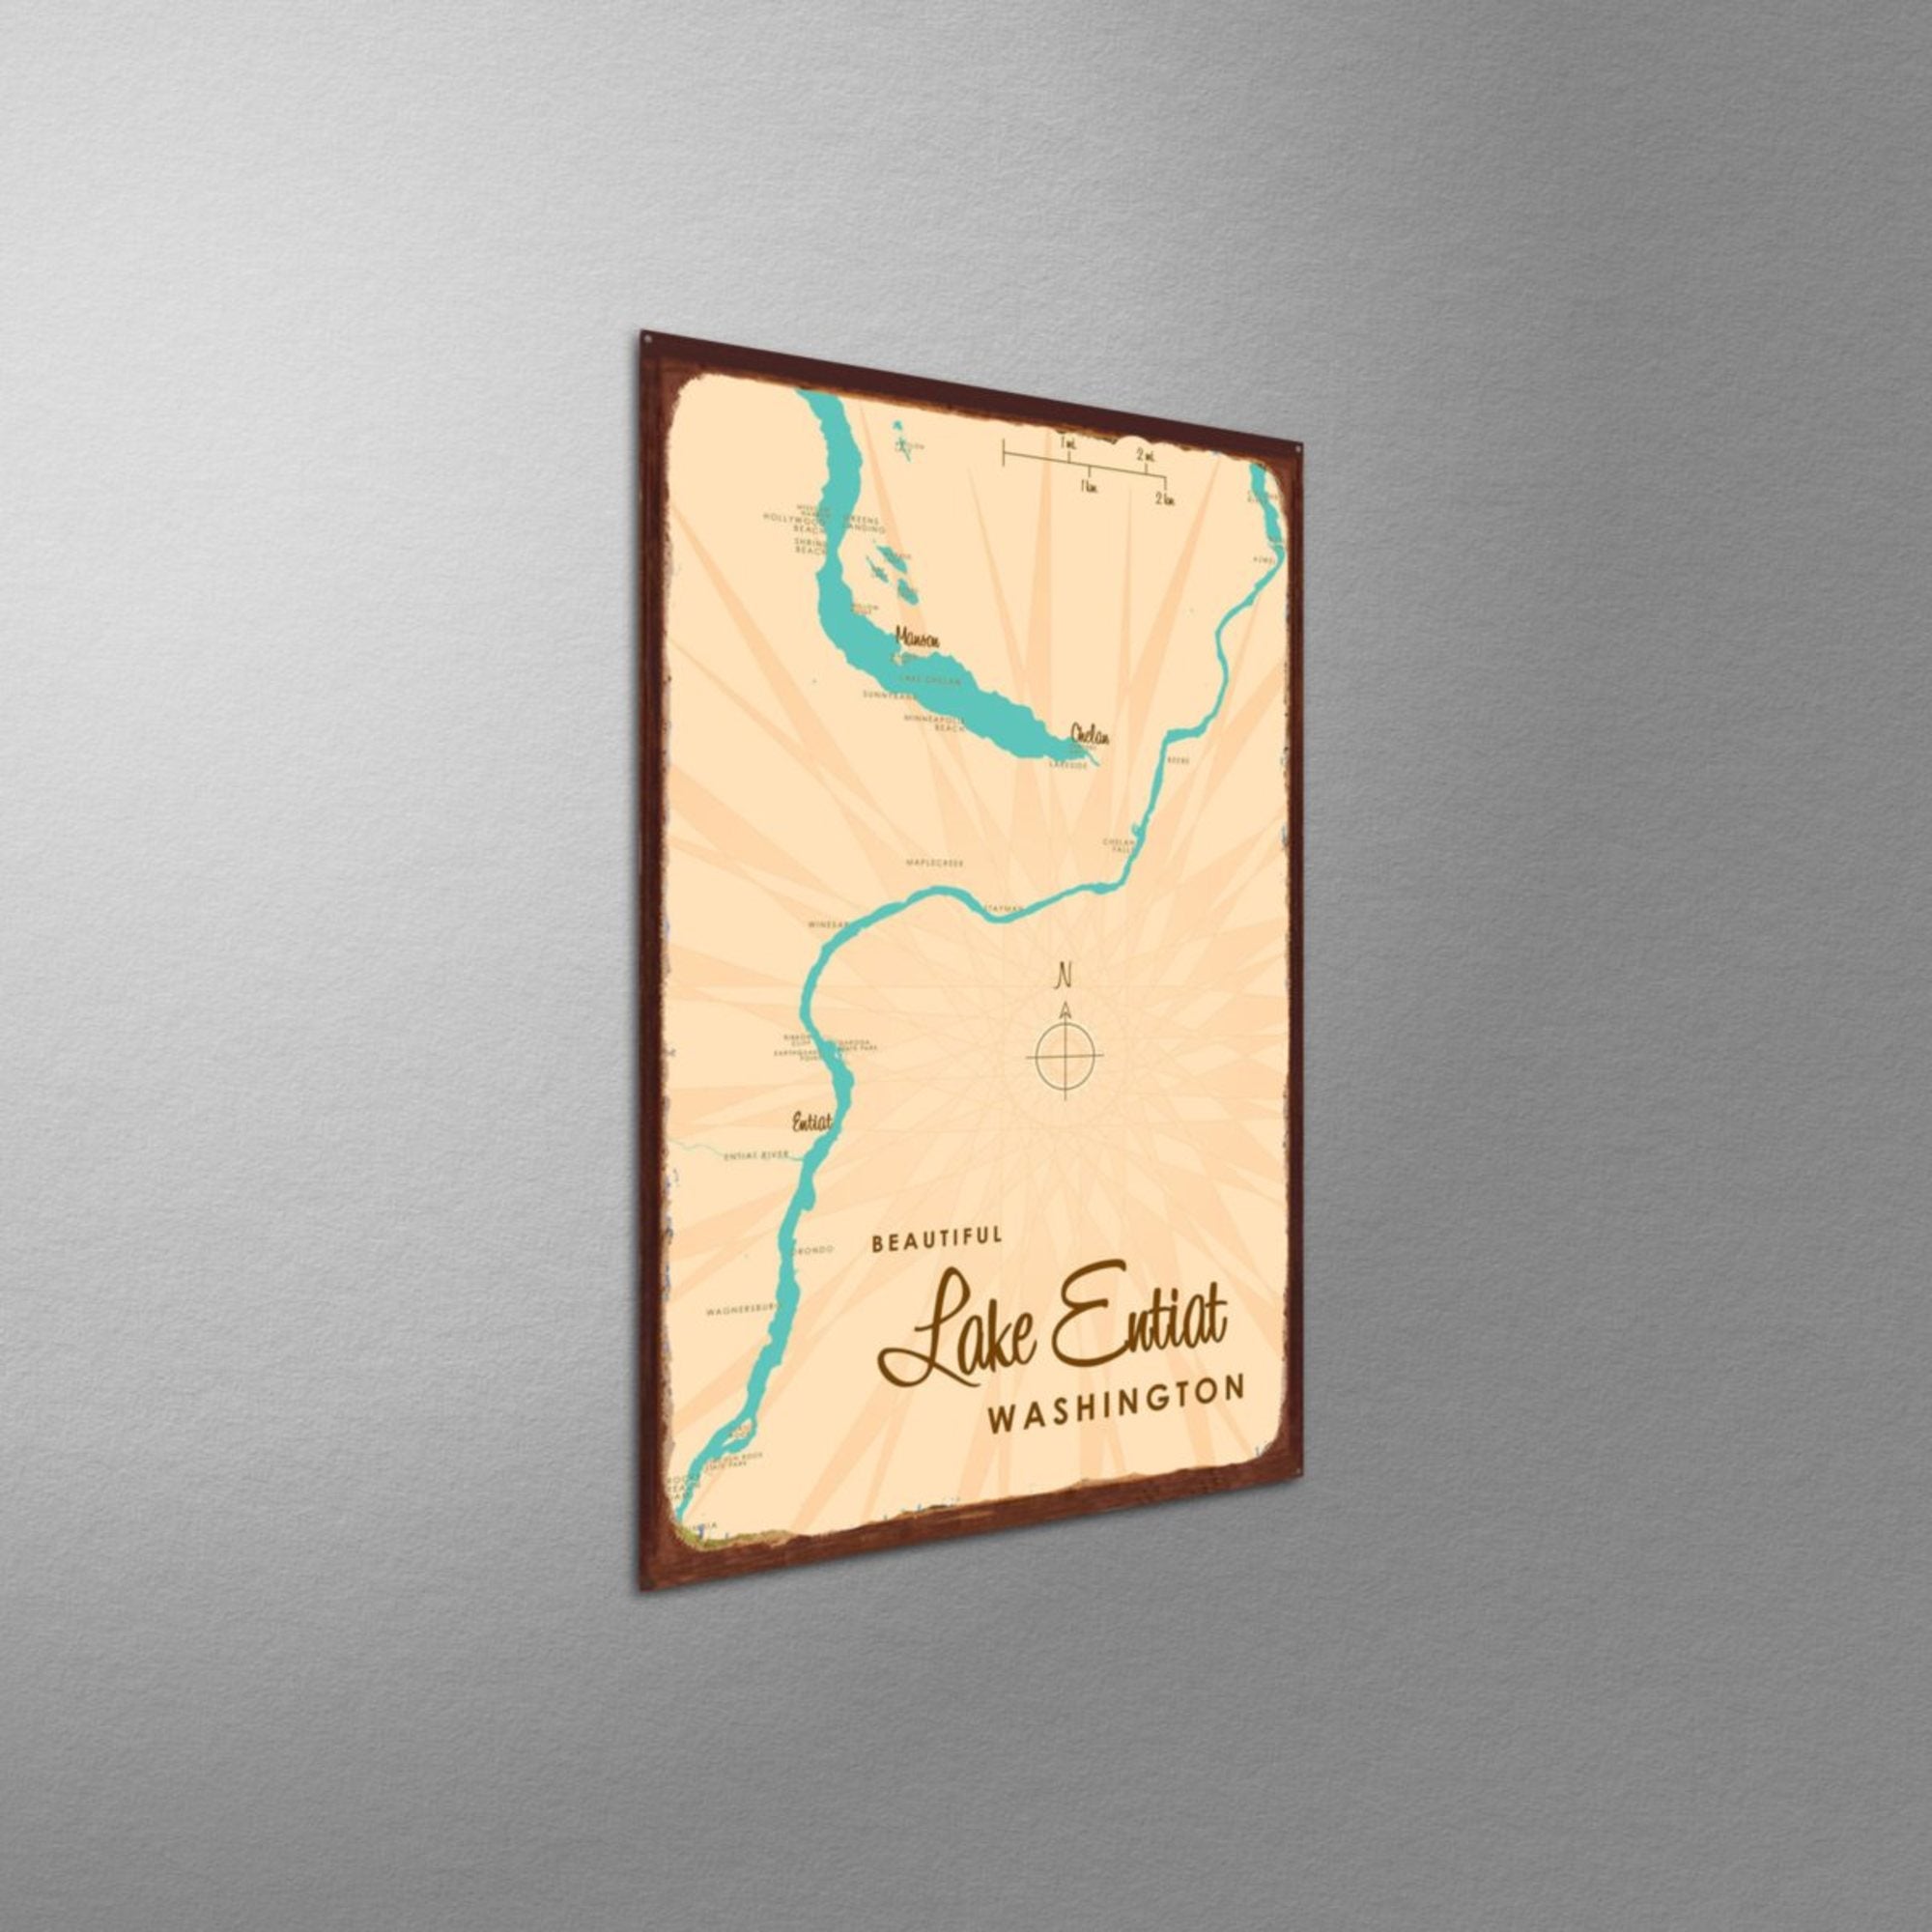 Lake Entiat Washington, Rustic Metal Sign Map Art